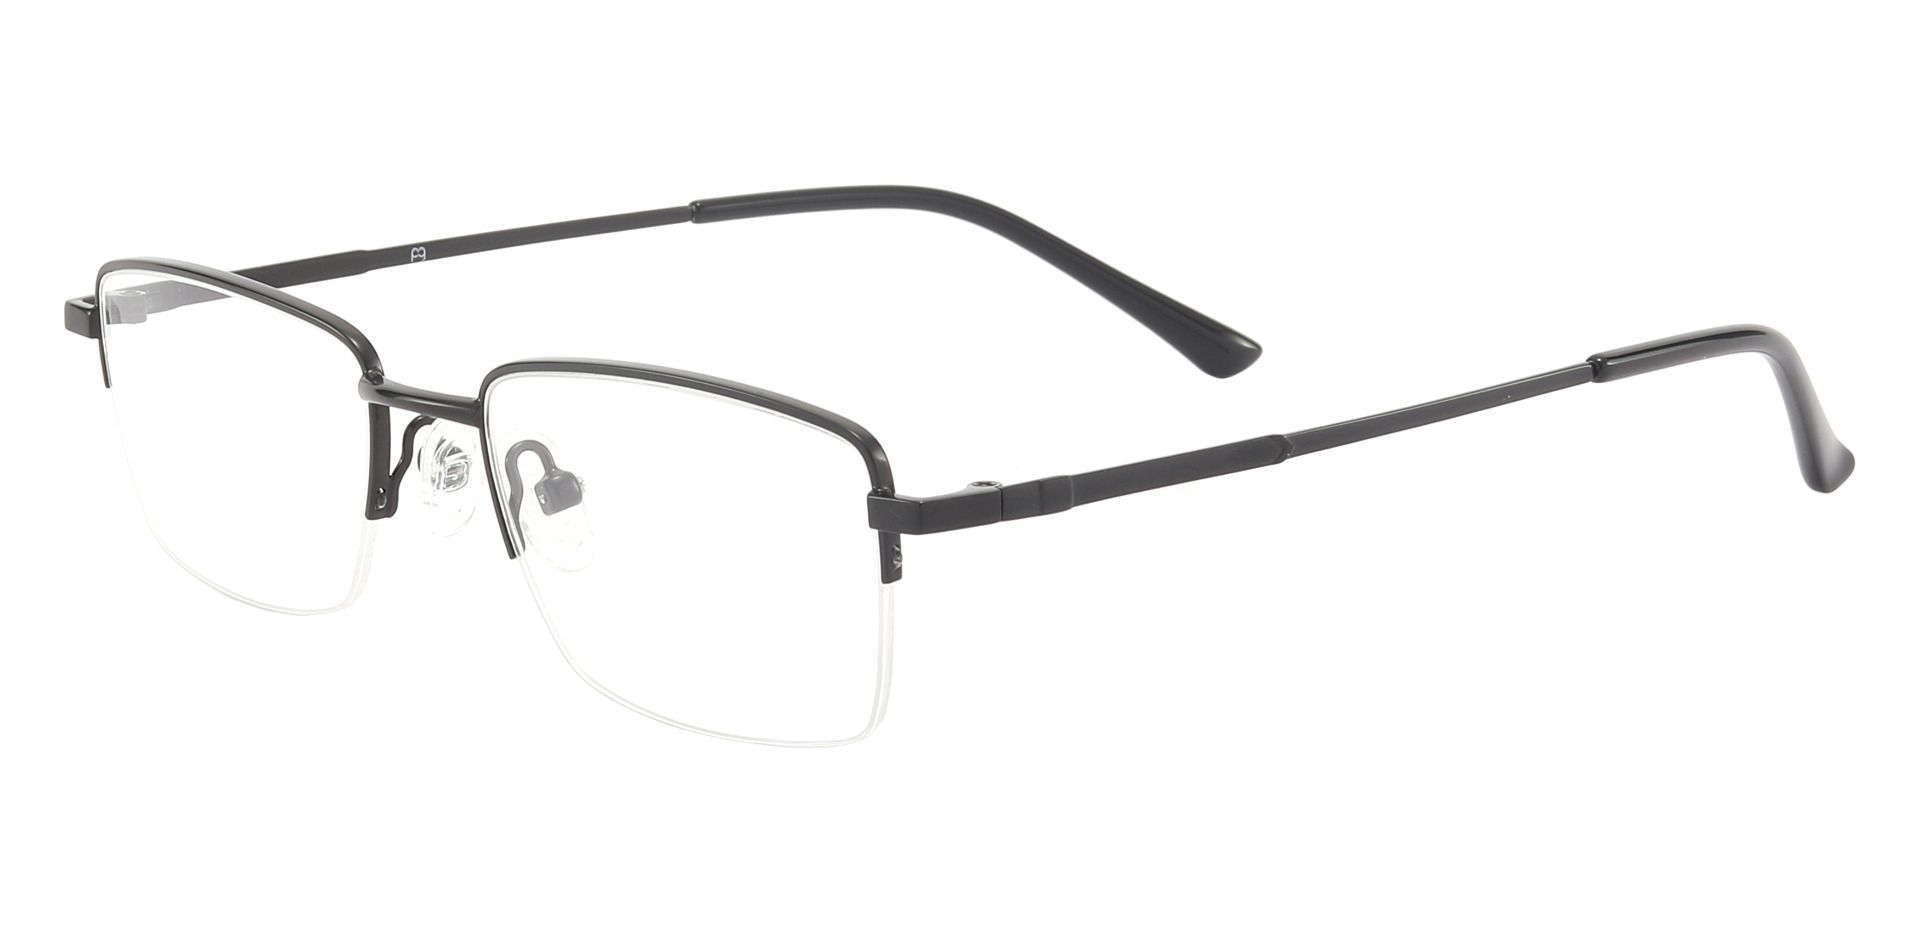 Tioga Rectangle Eyeglasses Frame - Black